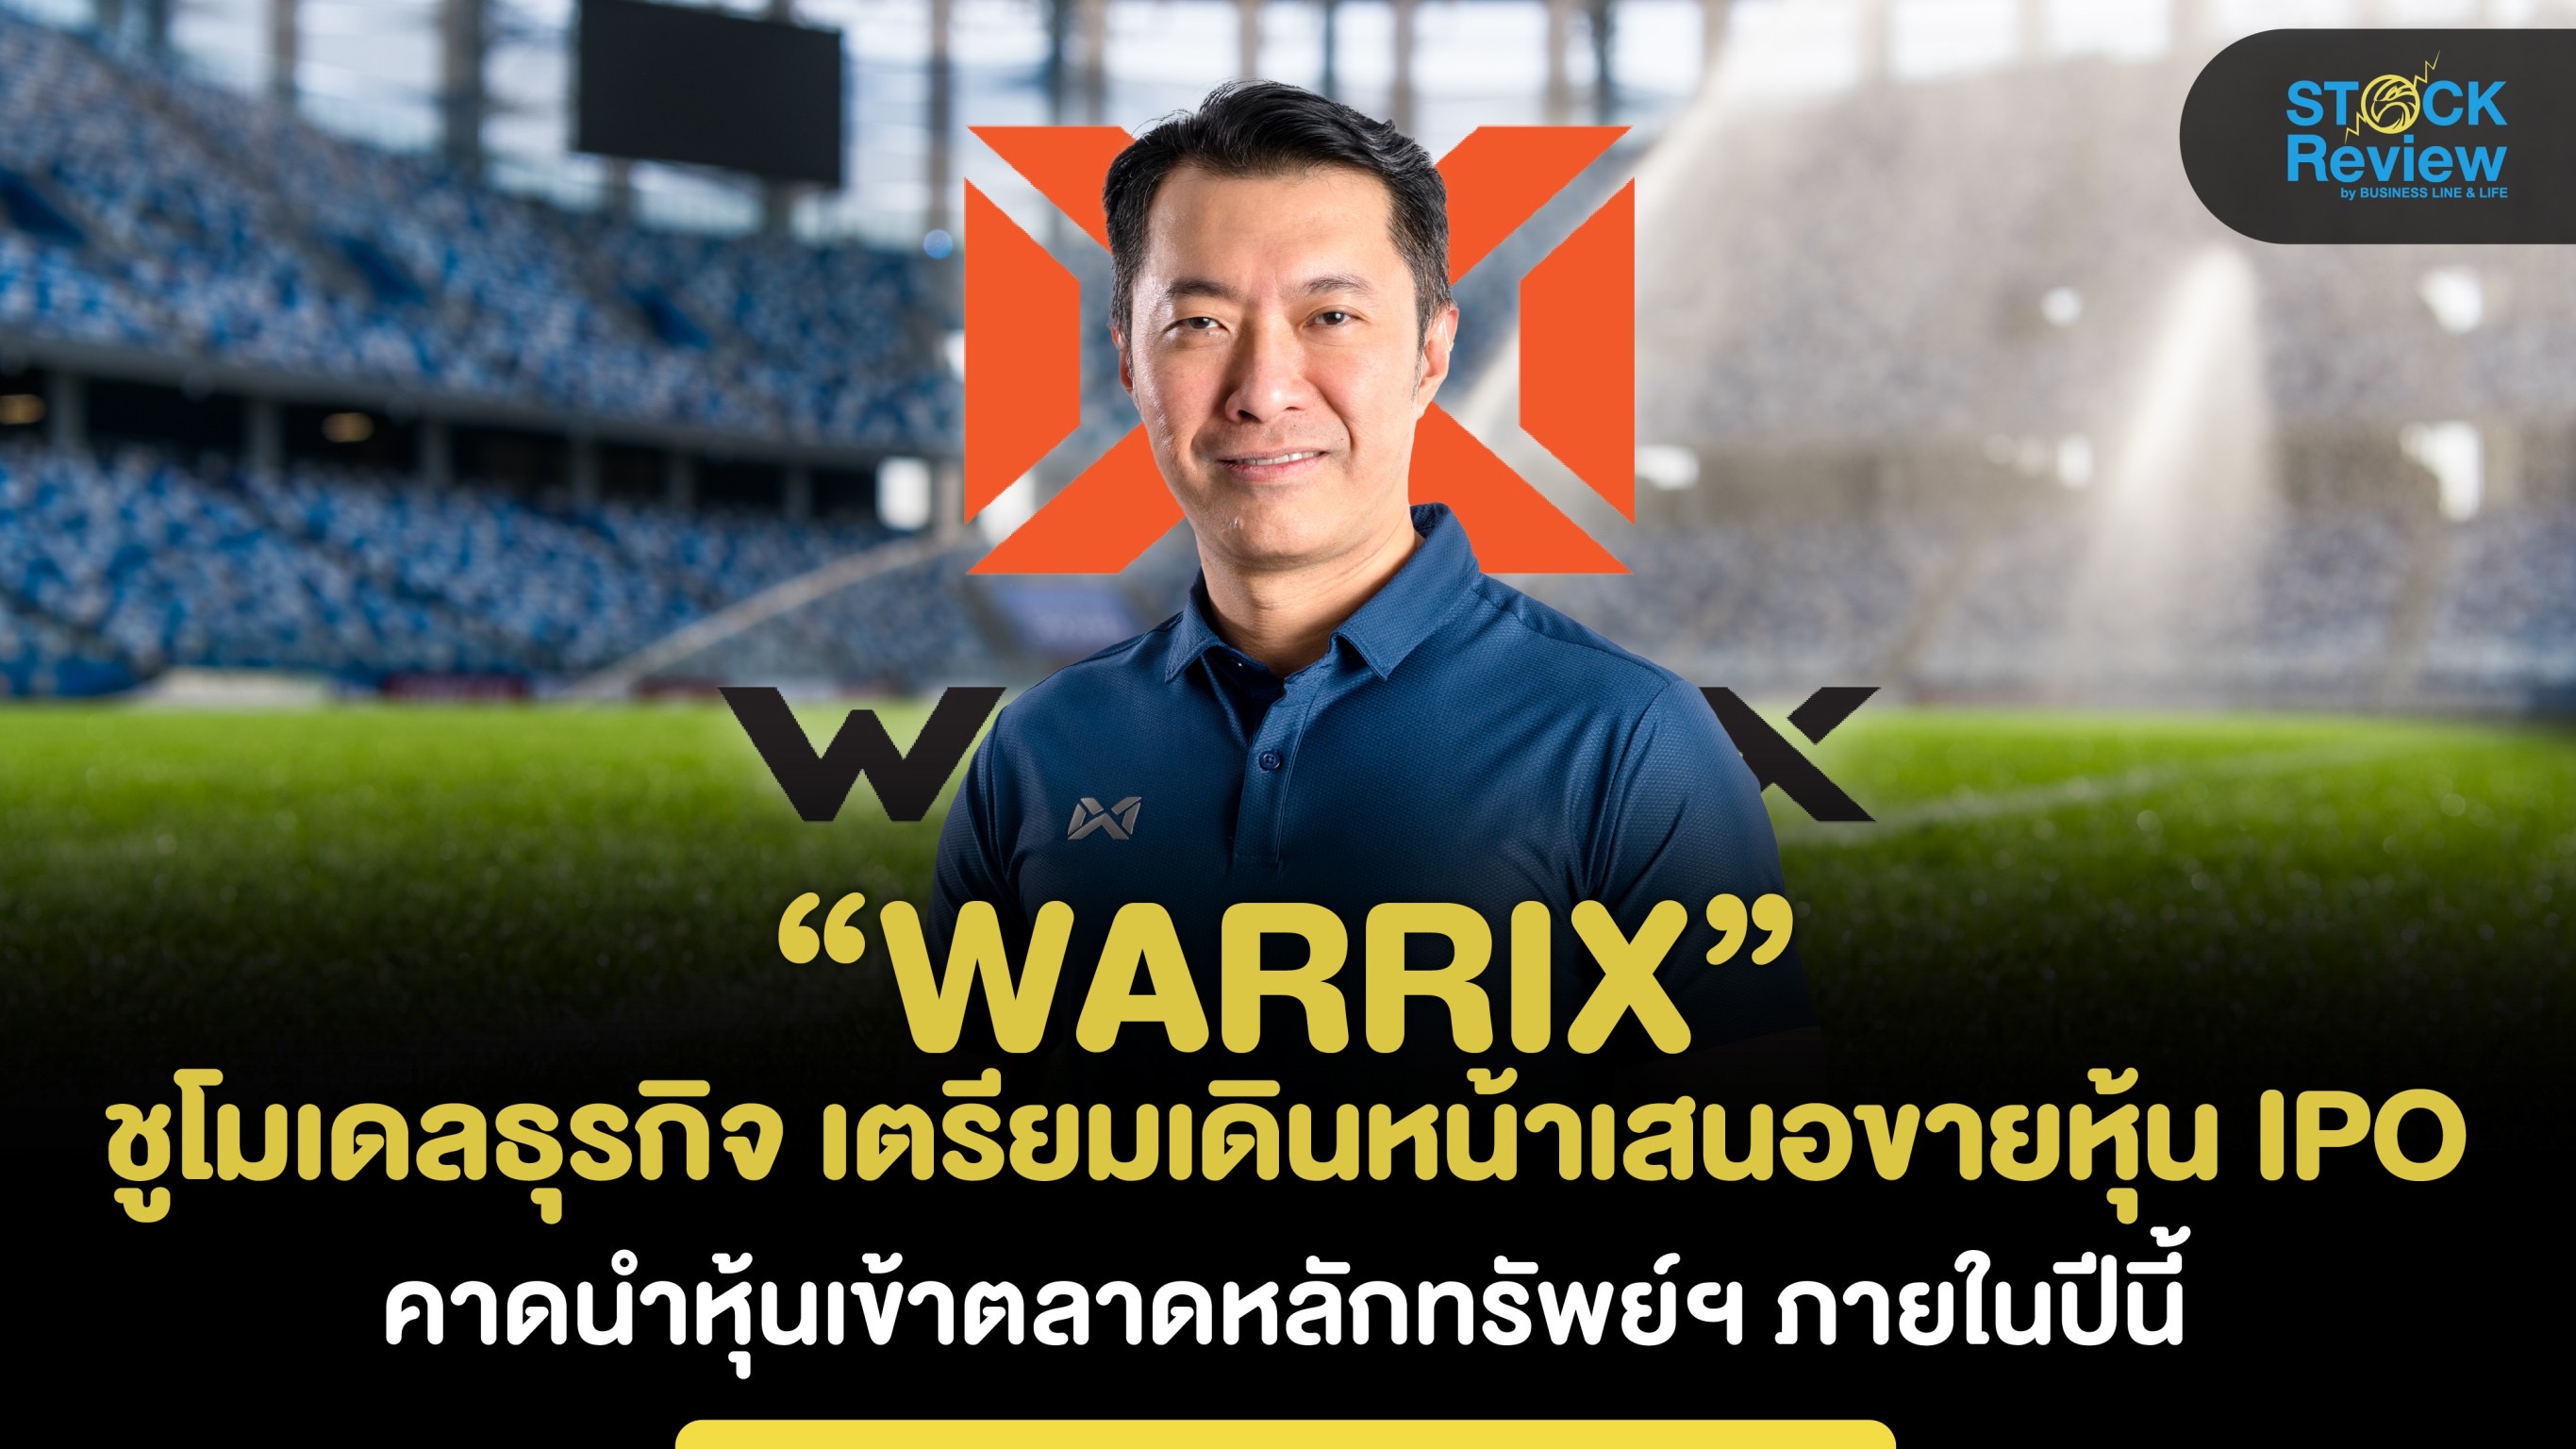 WARRIX เปิดแผนกลยุทธ์บุกธุรกิจ Sport – Health & Lifestyle แบบครบวงจร  คาดไอพีโอเร็วๆนี้